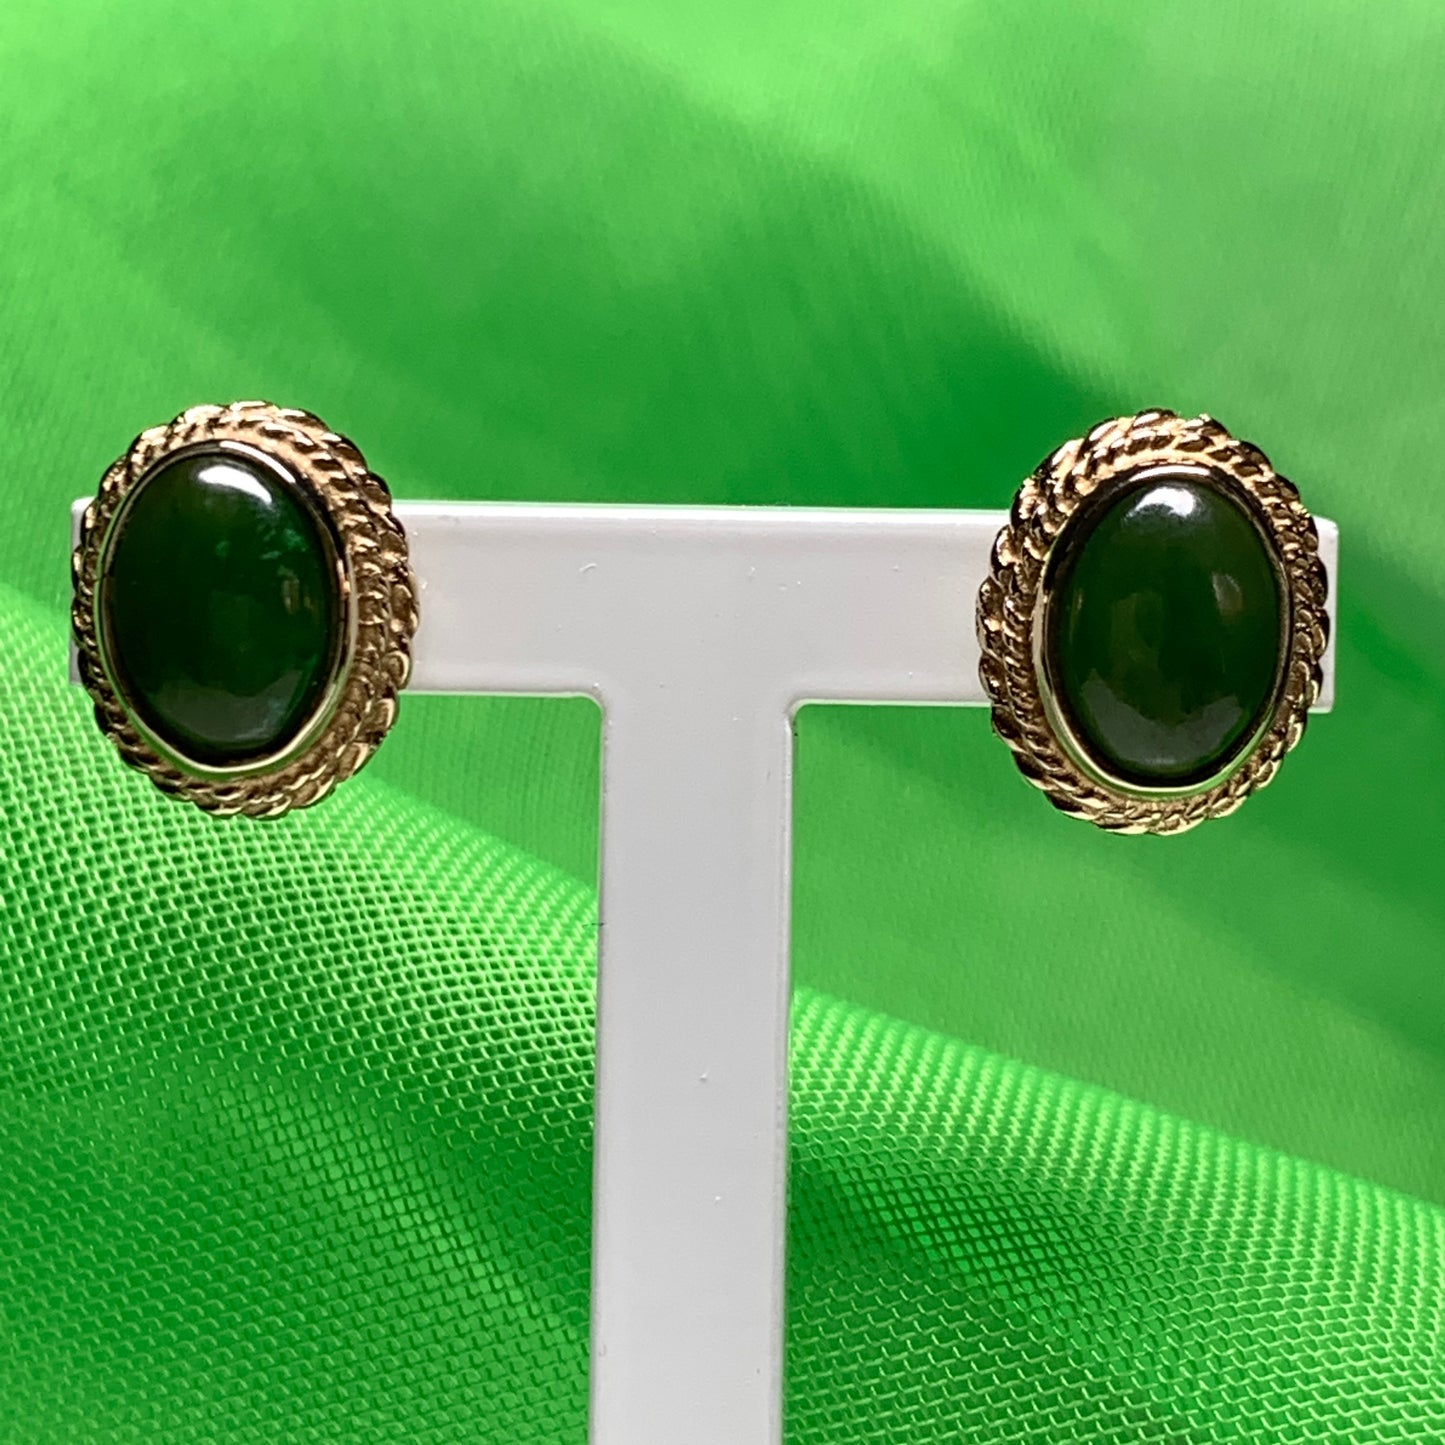 Green jade gold oval stud earrings